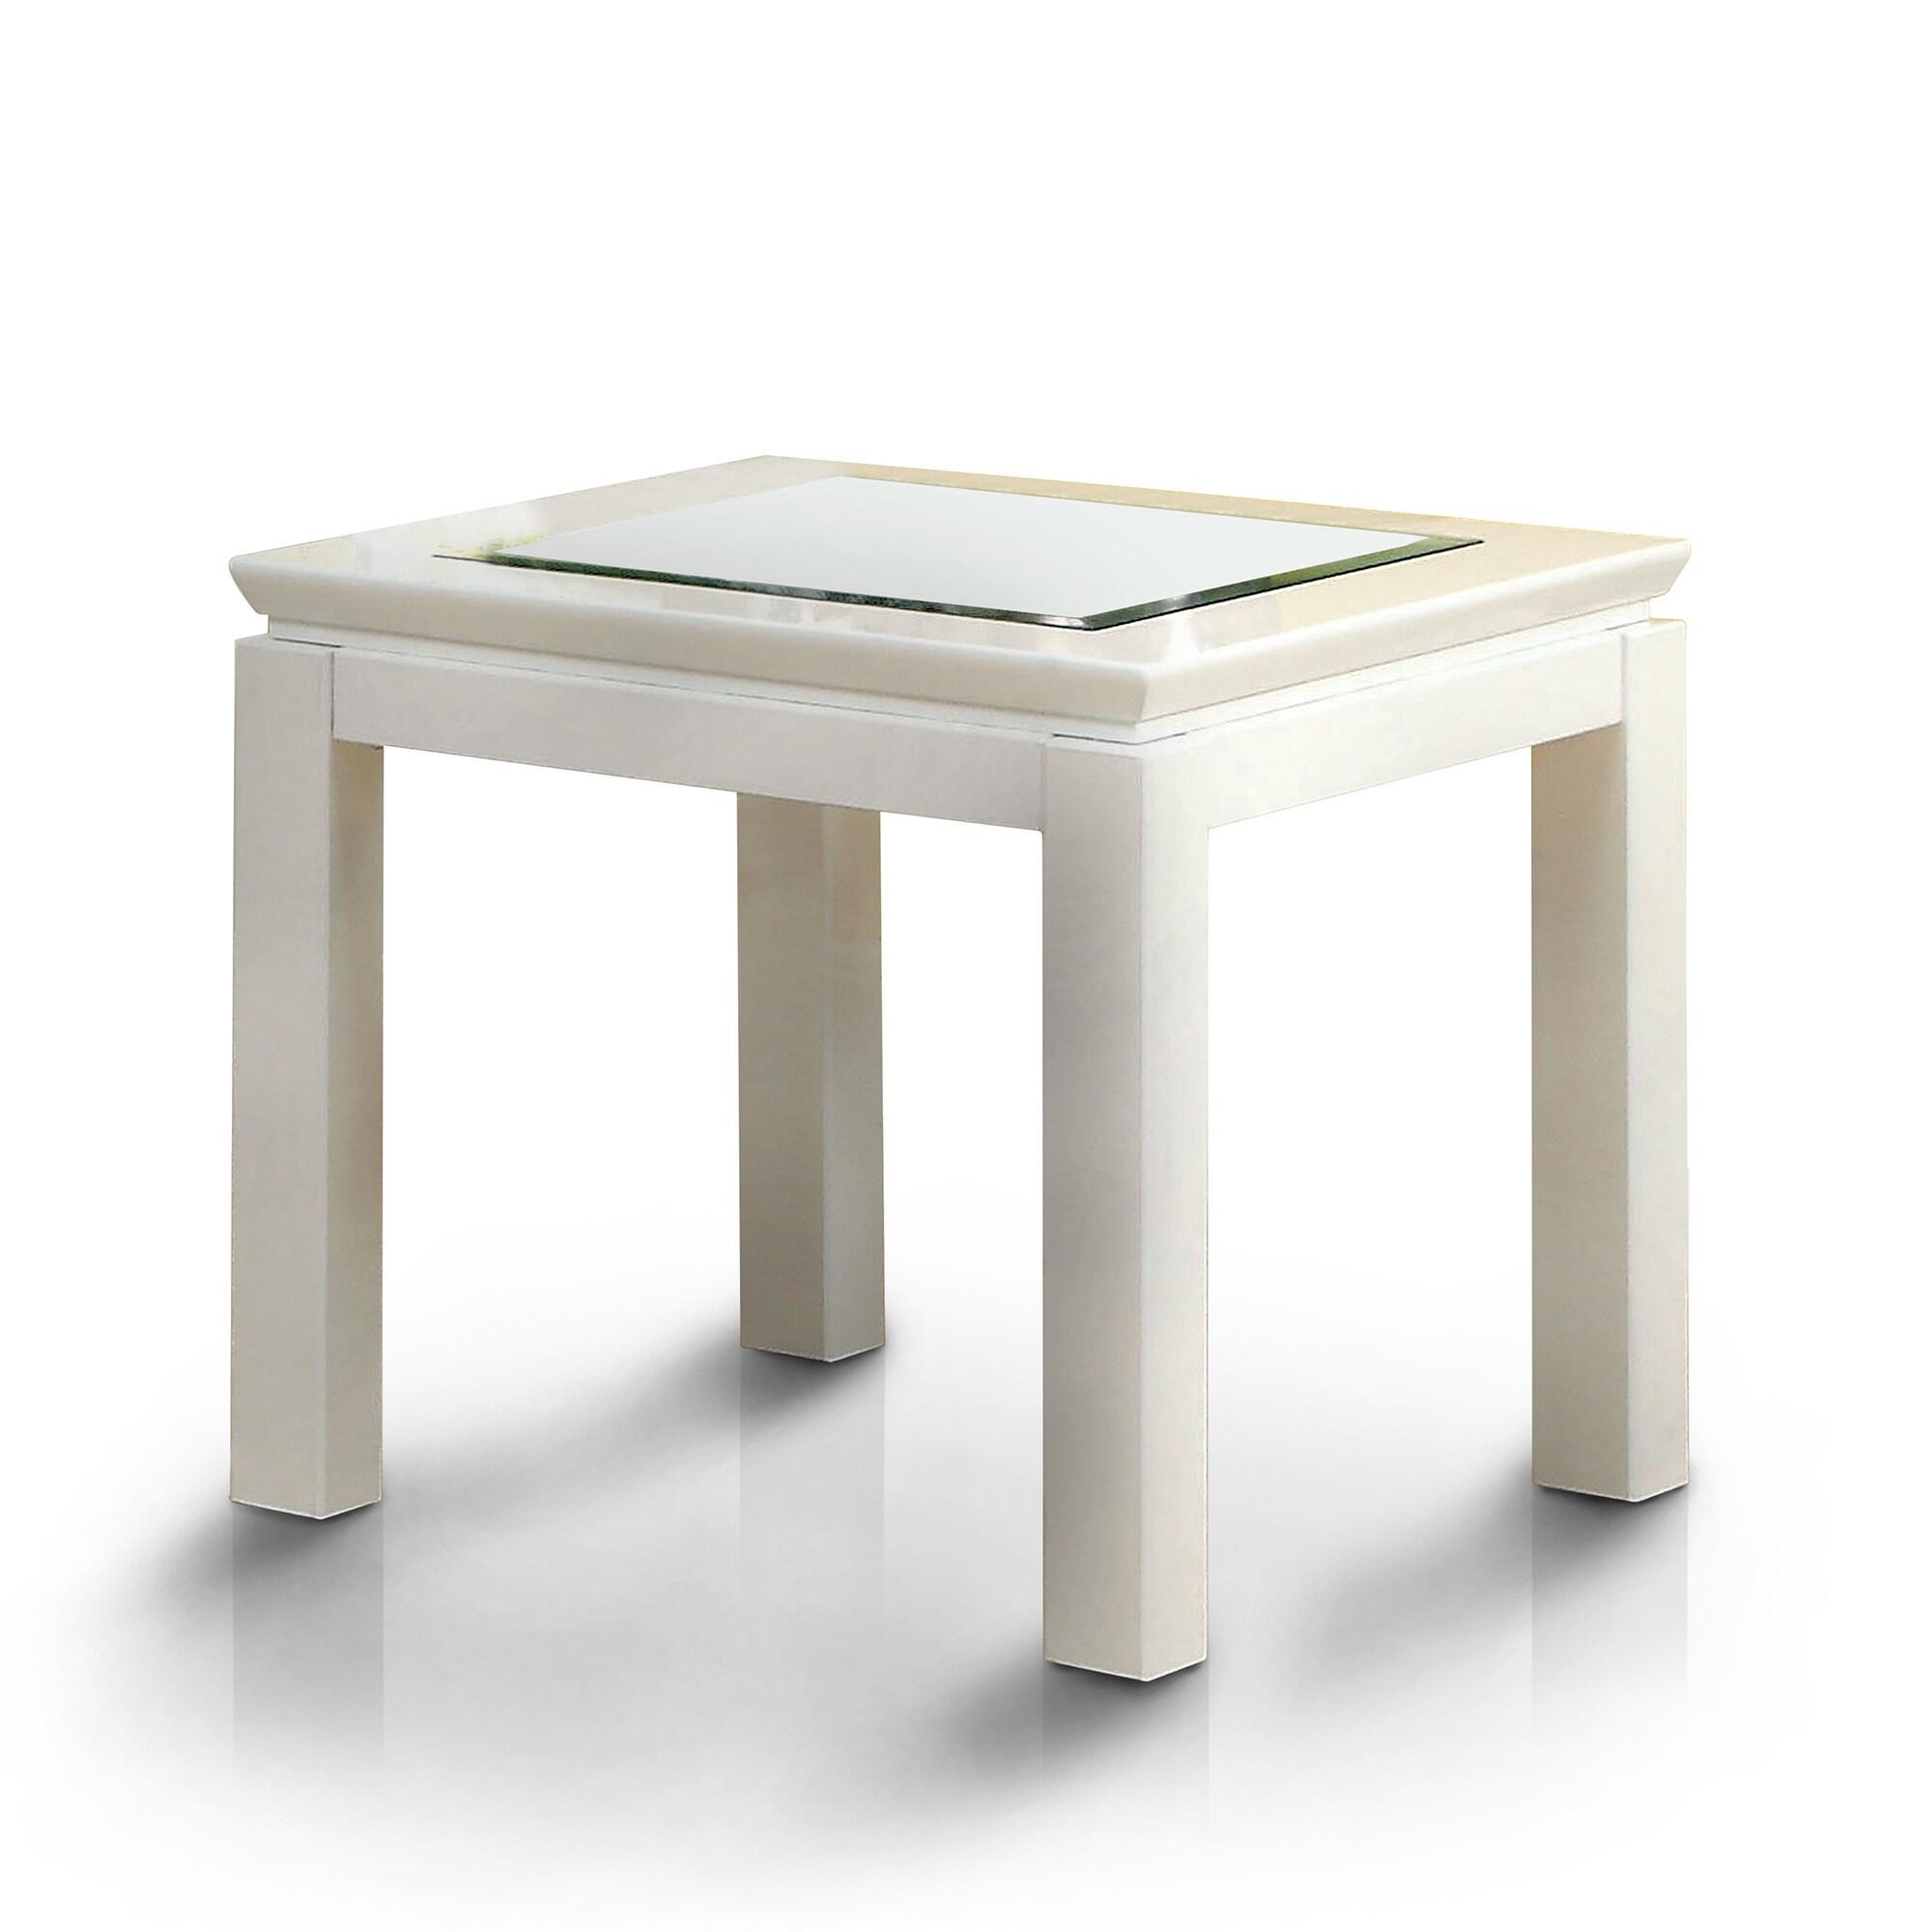 Contemporary End Table CM4238WH-E Venta CM4238WH-E in White 